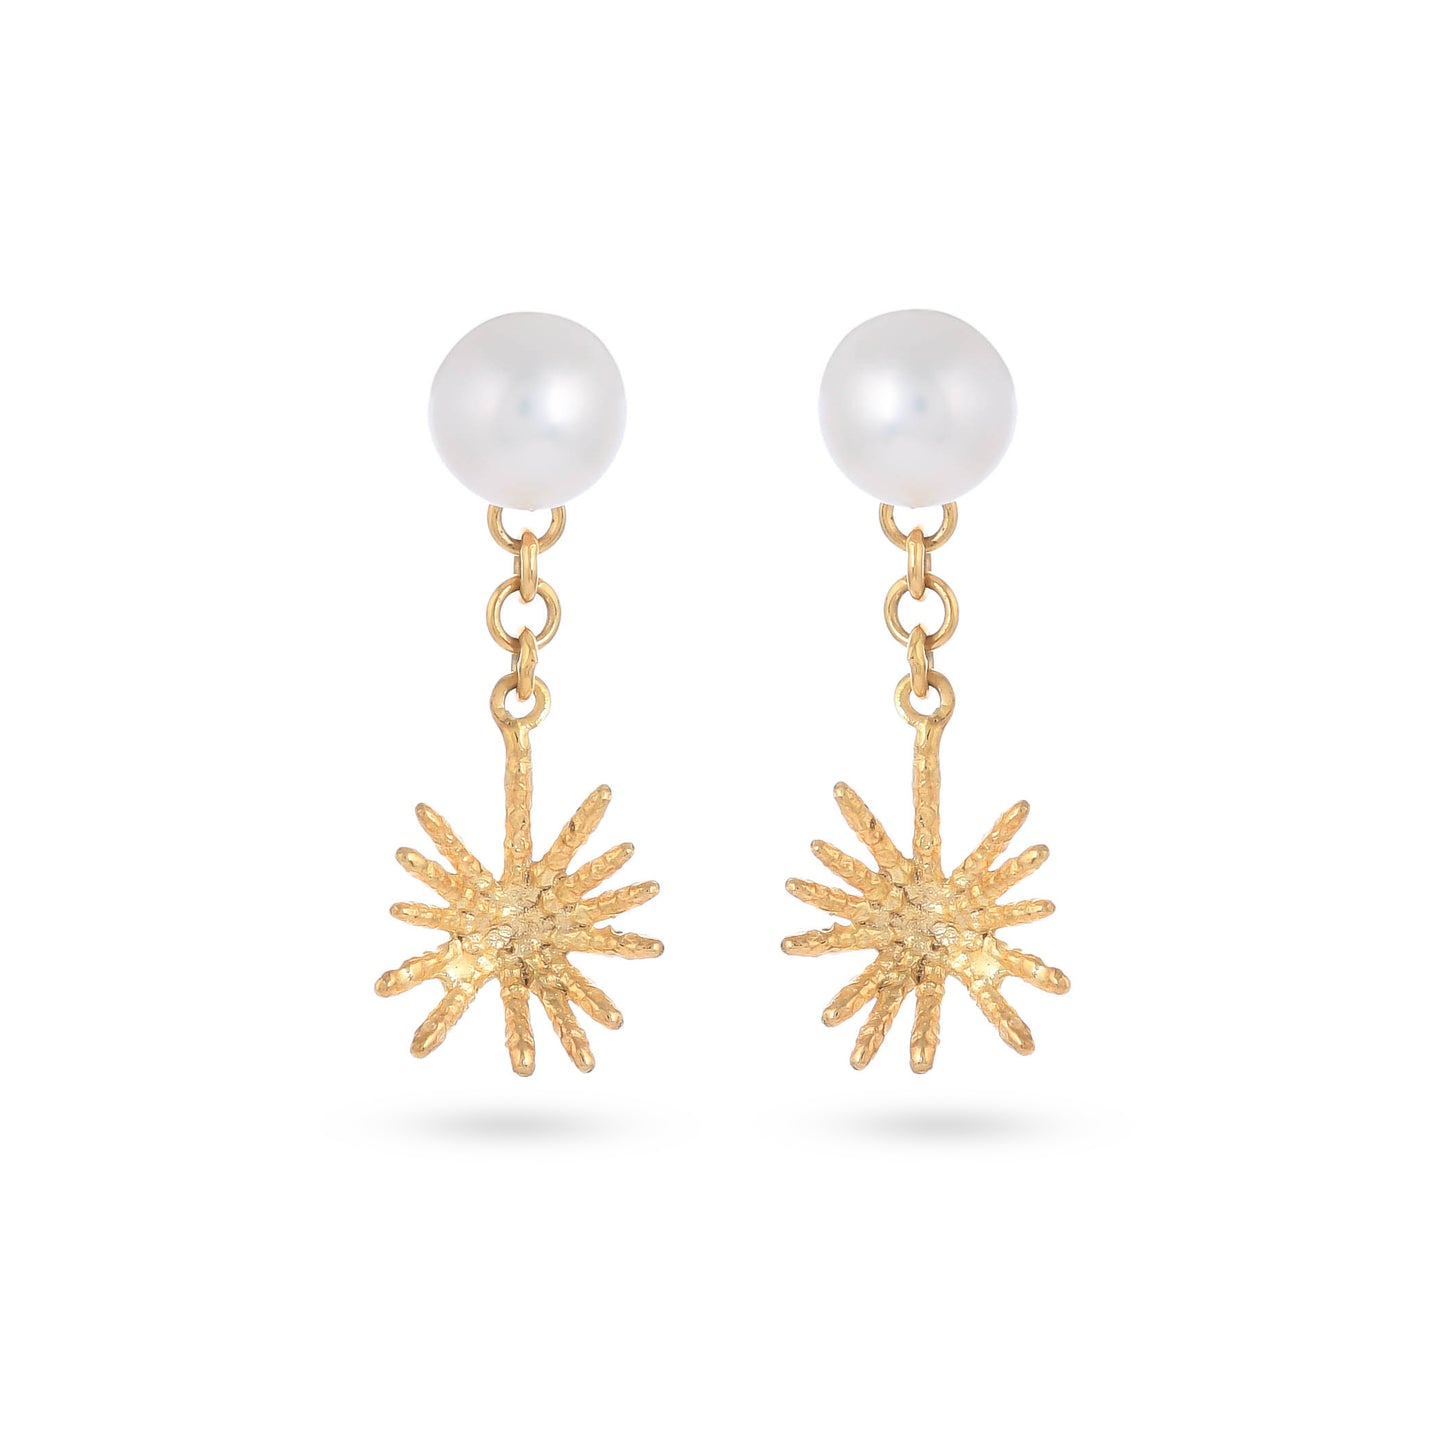 Bohemian-Flower-Pearl-Silver-Earrings-For-Women